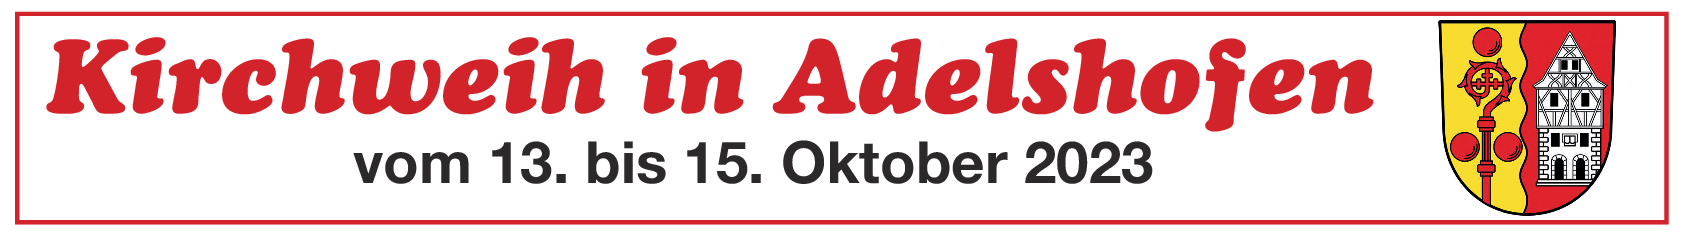 Kirchweih in Adelshofen vom 13. bis 15. Oktober